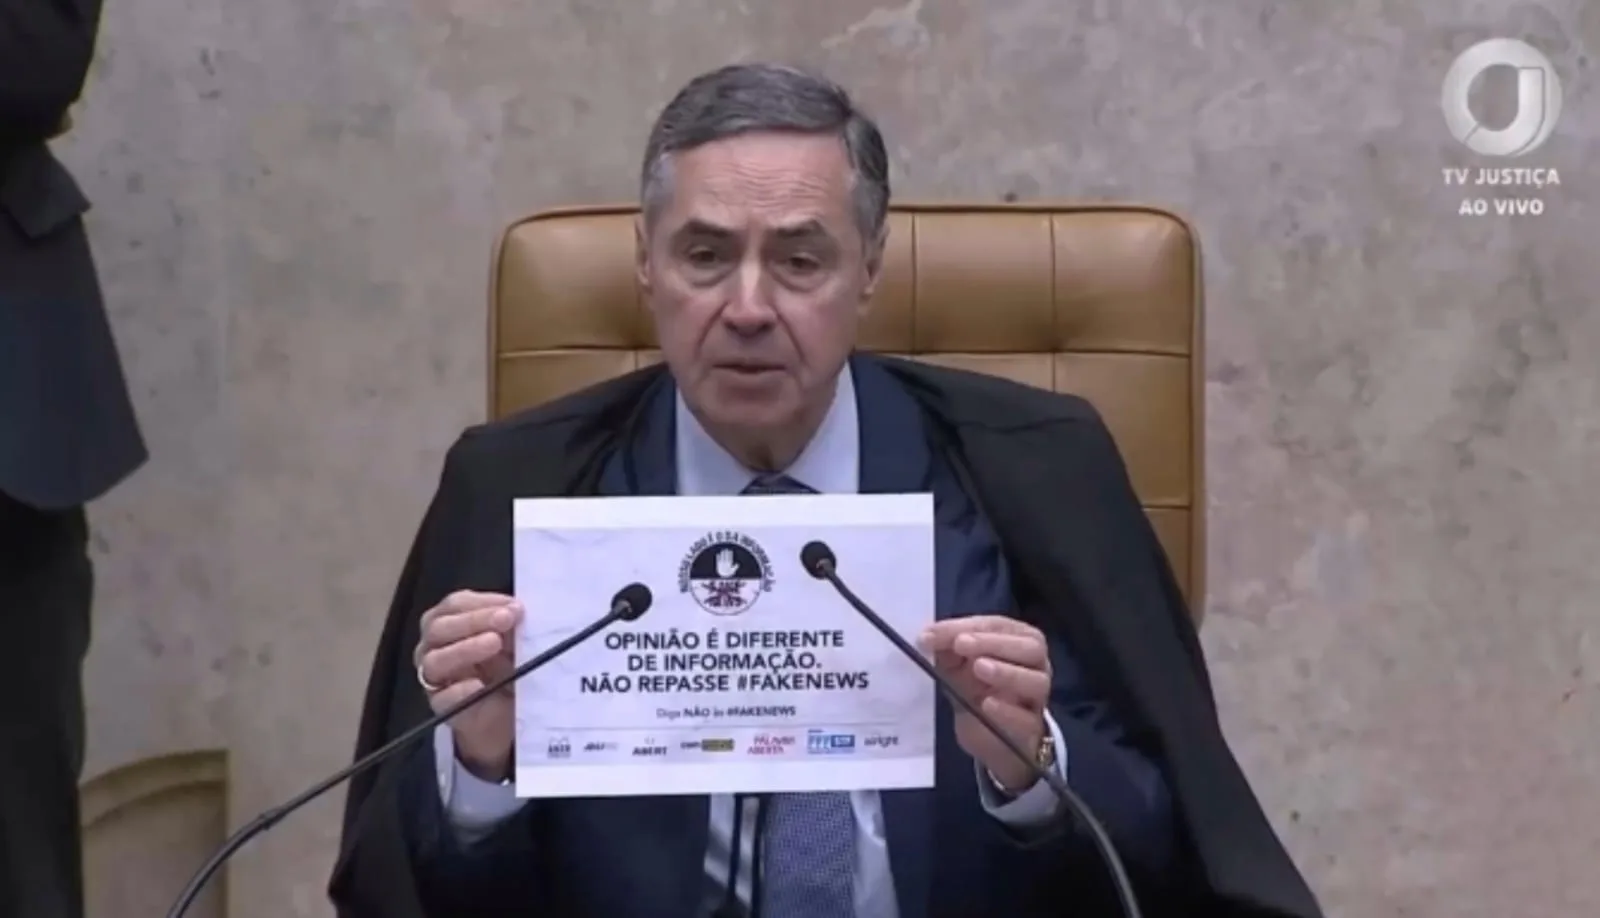 Ministro Luis Barroso cita campanha Aner contra desinformação e fake news em sessão plenária no STF